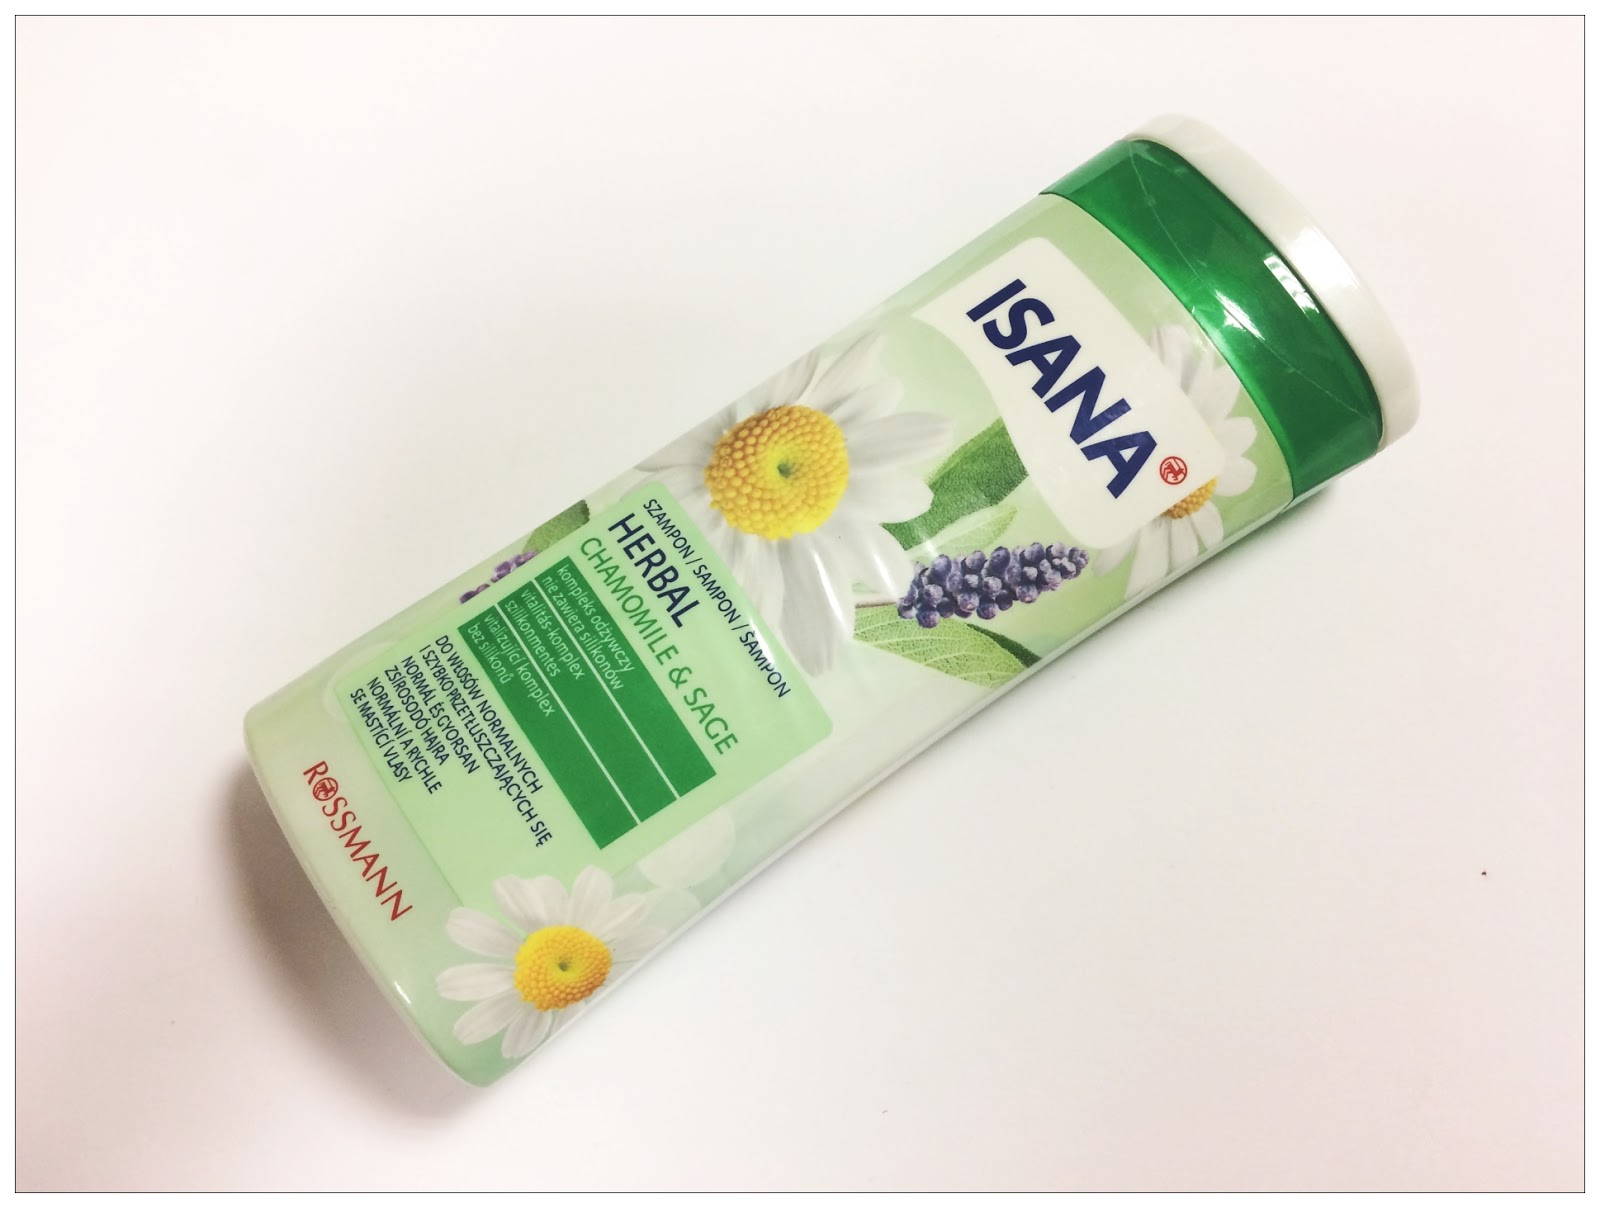 isana szampon herbal blog